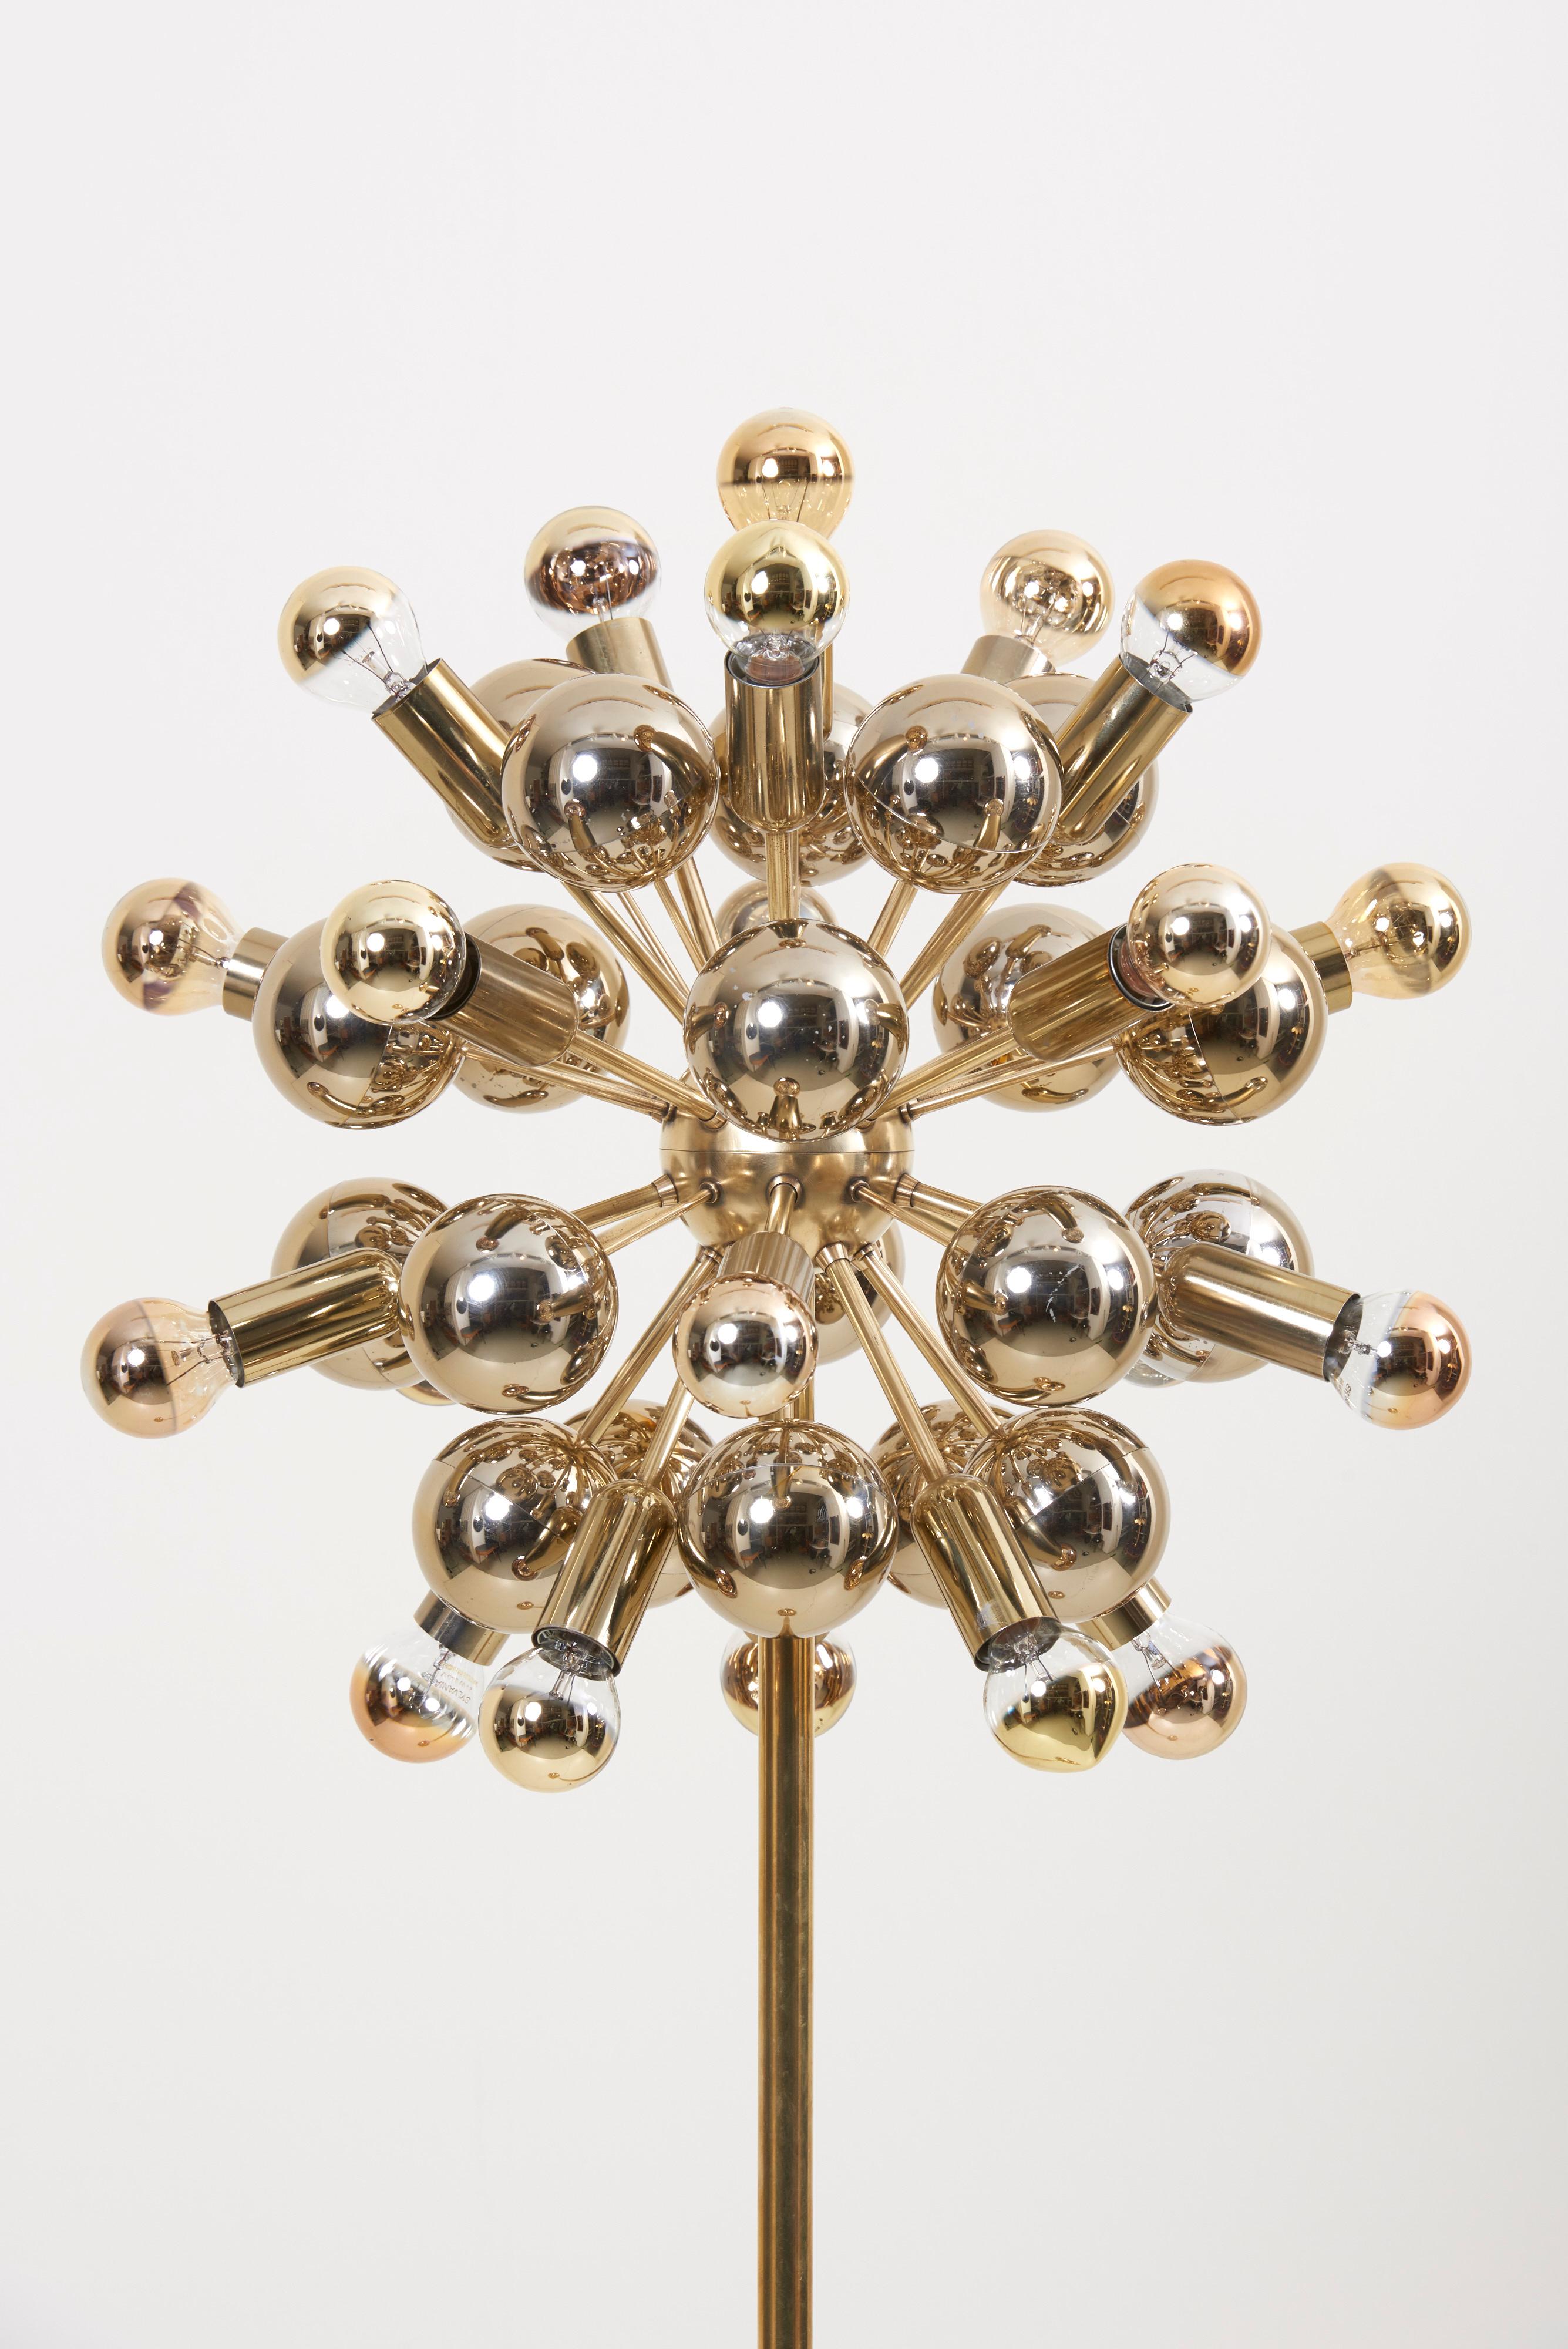 Sputnik Floor Lamp in Brass by Cosack Leuchten, Germany 1